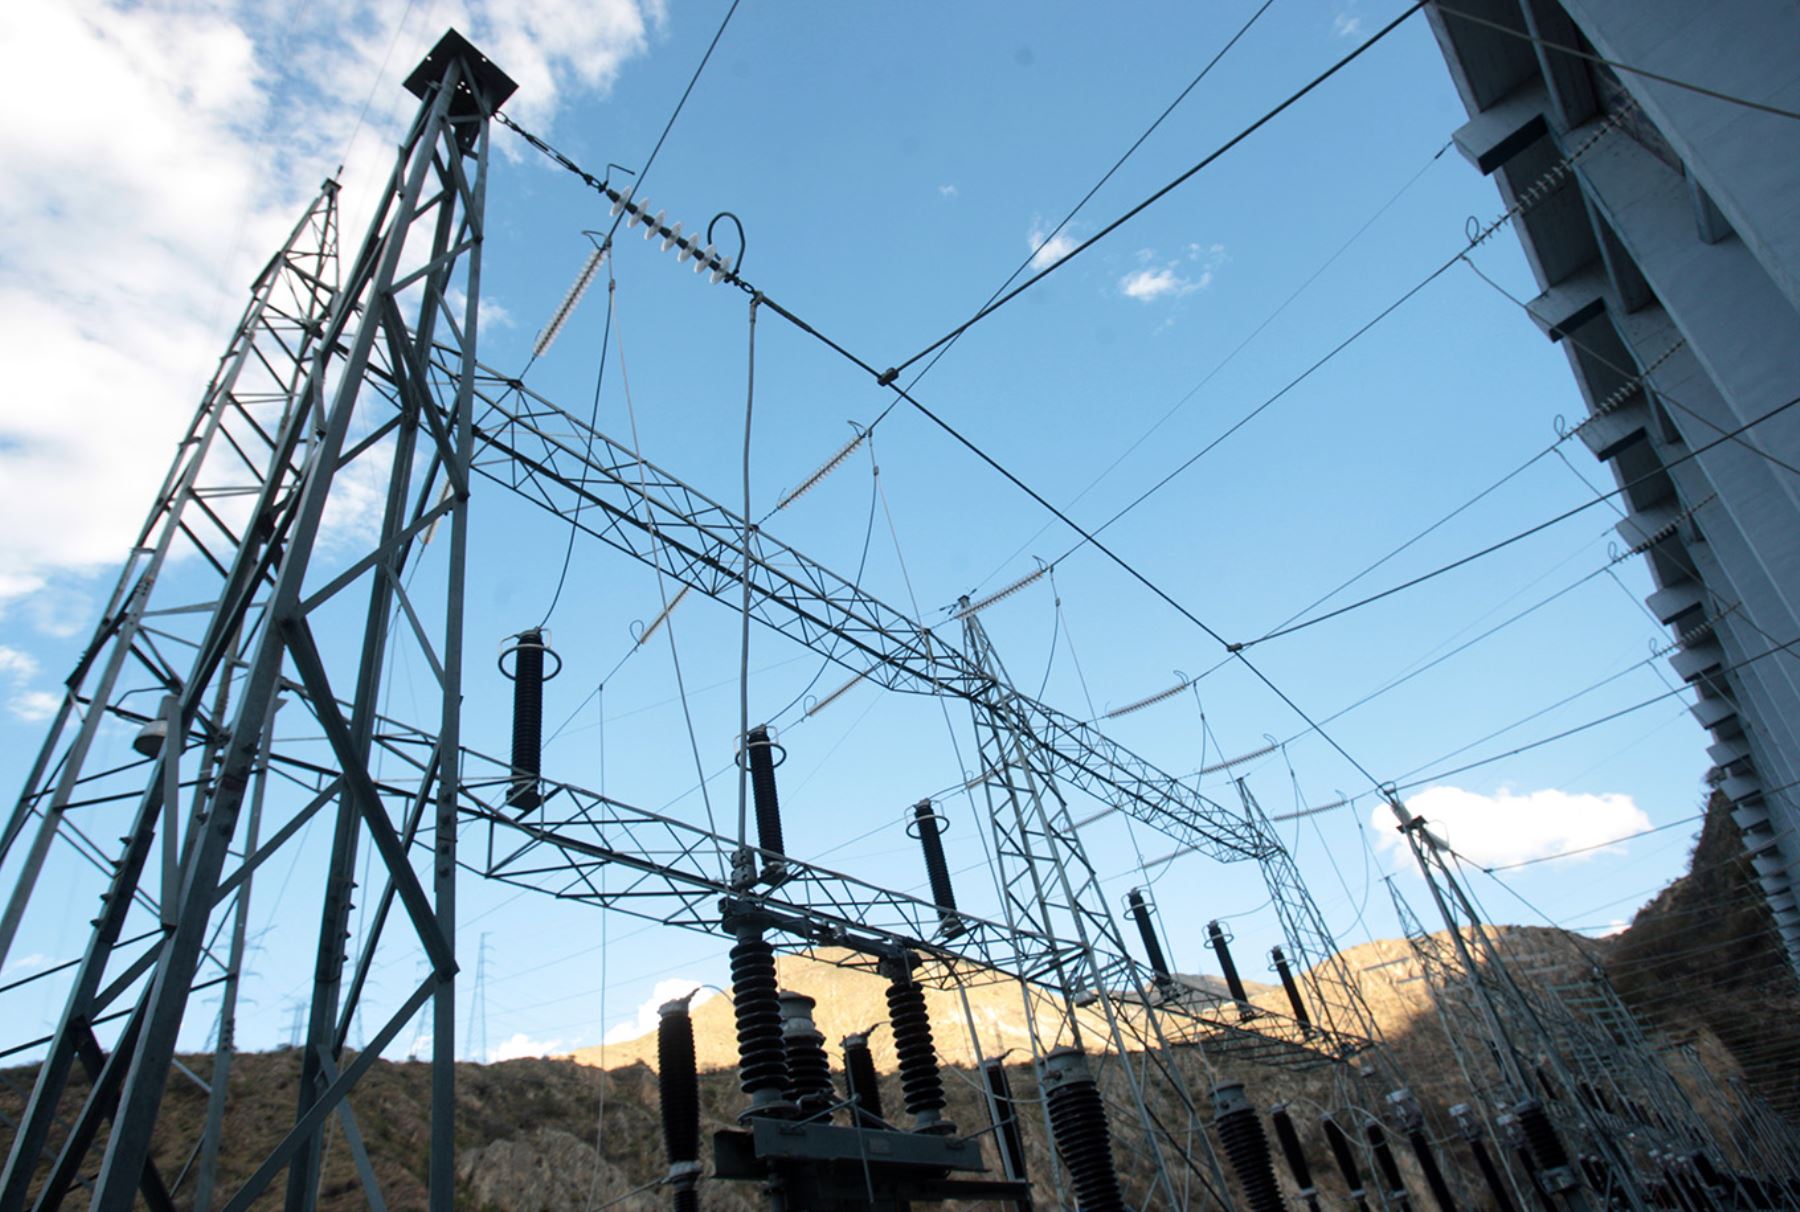 Sector electricidad creció 6.78% en diciembre y sumó 11 meses de expansión continua